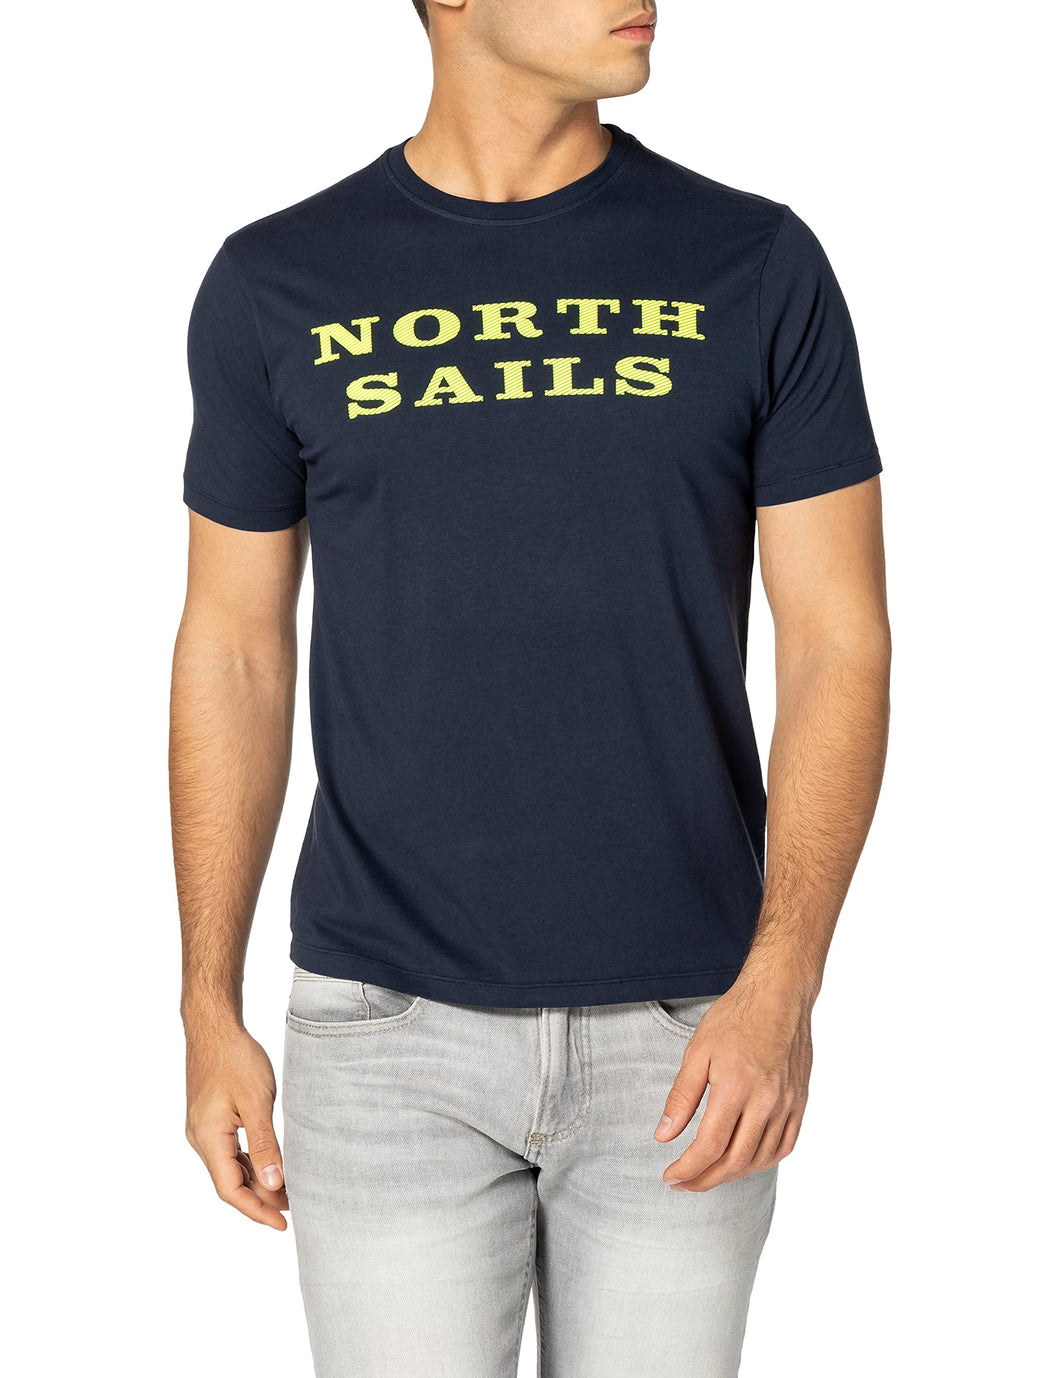 NORTH SAILS T-Shirt da Uomo in Jersey Blu Notte - 100% Cotone Biologico - vestibilità Regolare - Leggera con Girocollo e Maniche Corte - XL